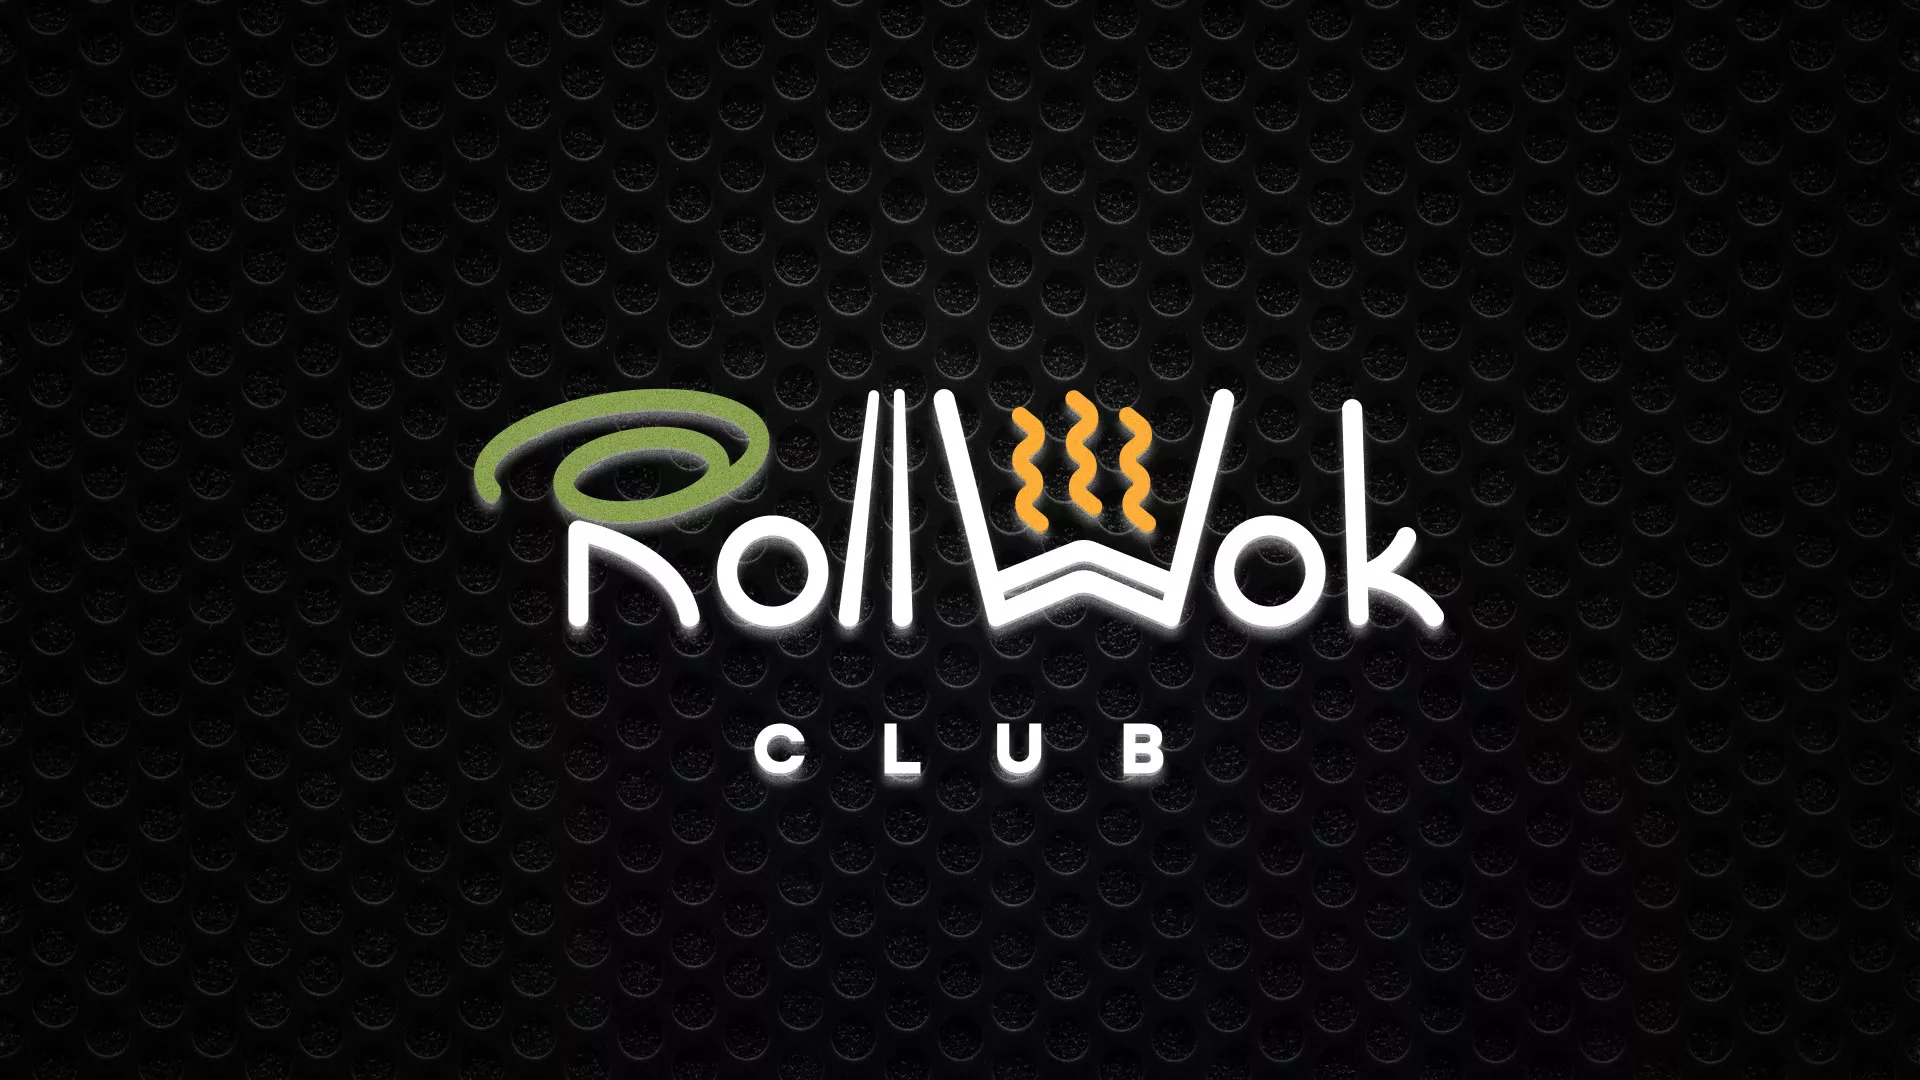 Брендирование торговых точек суши-бара «Roll Wok Club» в Щербинке